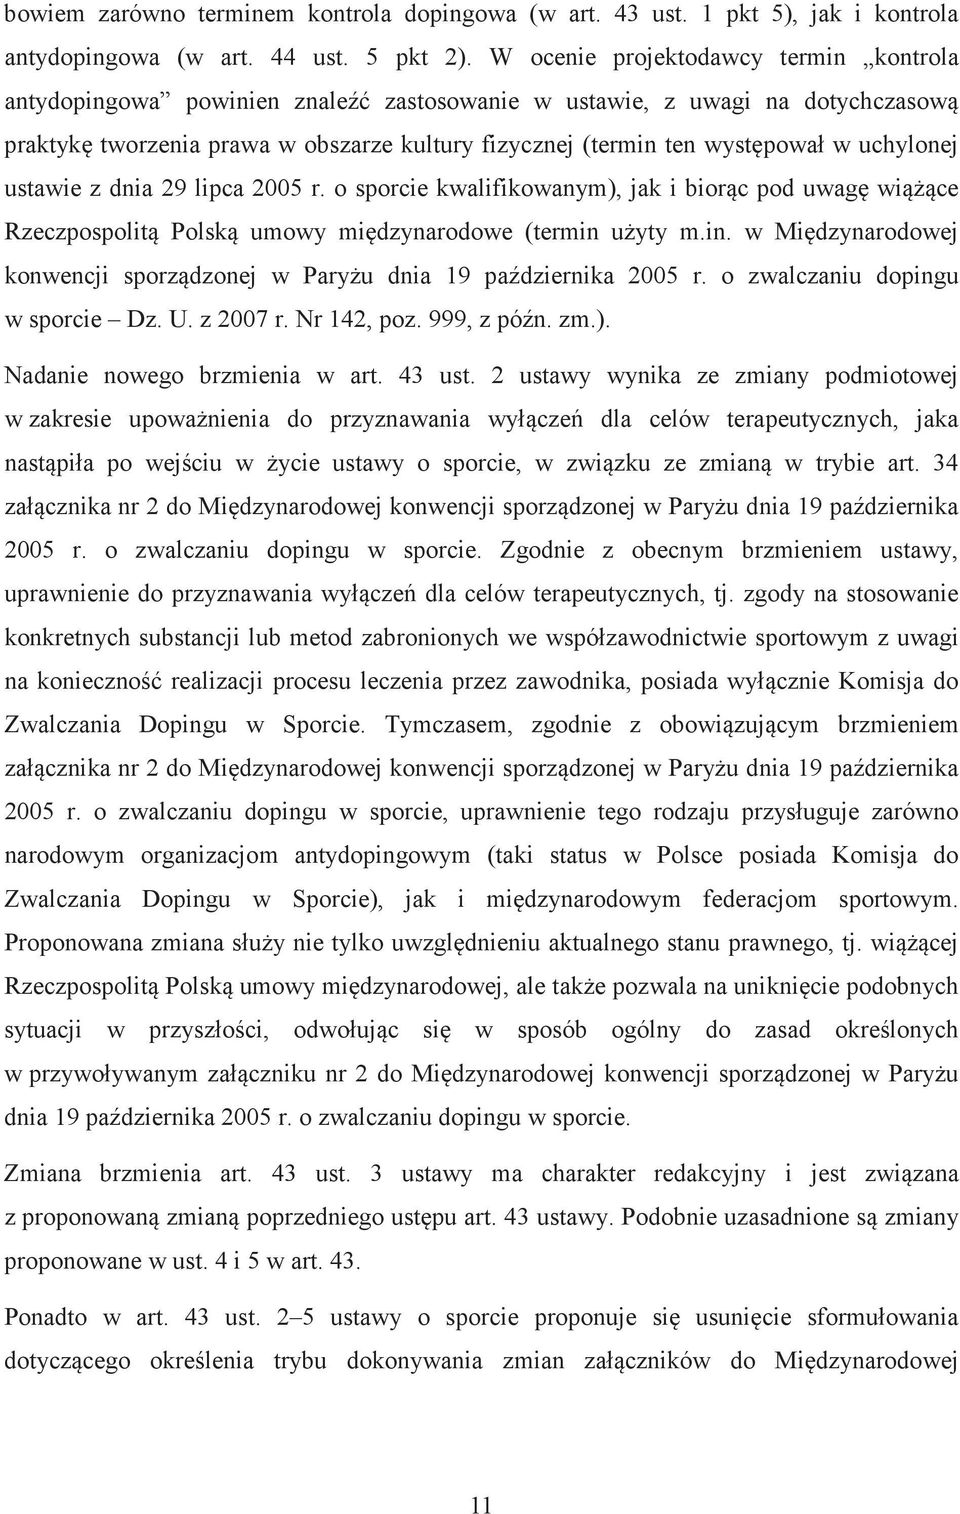 uchylonej ustawie z dnia 29 lipca 2005 r. o sporcie kwalifikowanym), jak i biorc pod uwag wice Rzeczpospolit Polsk umowy midzynarodowe (termin 